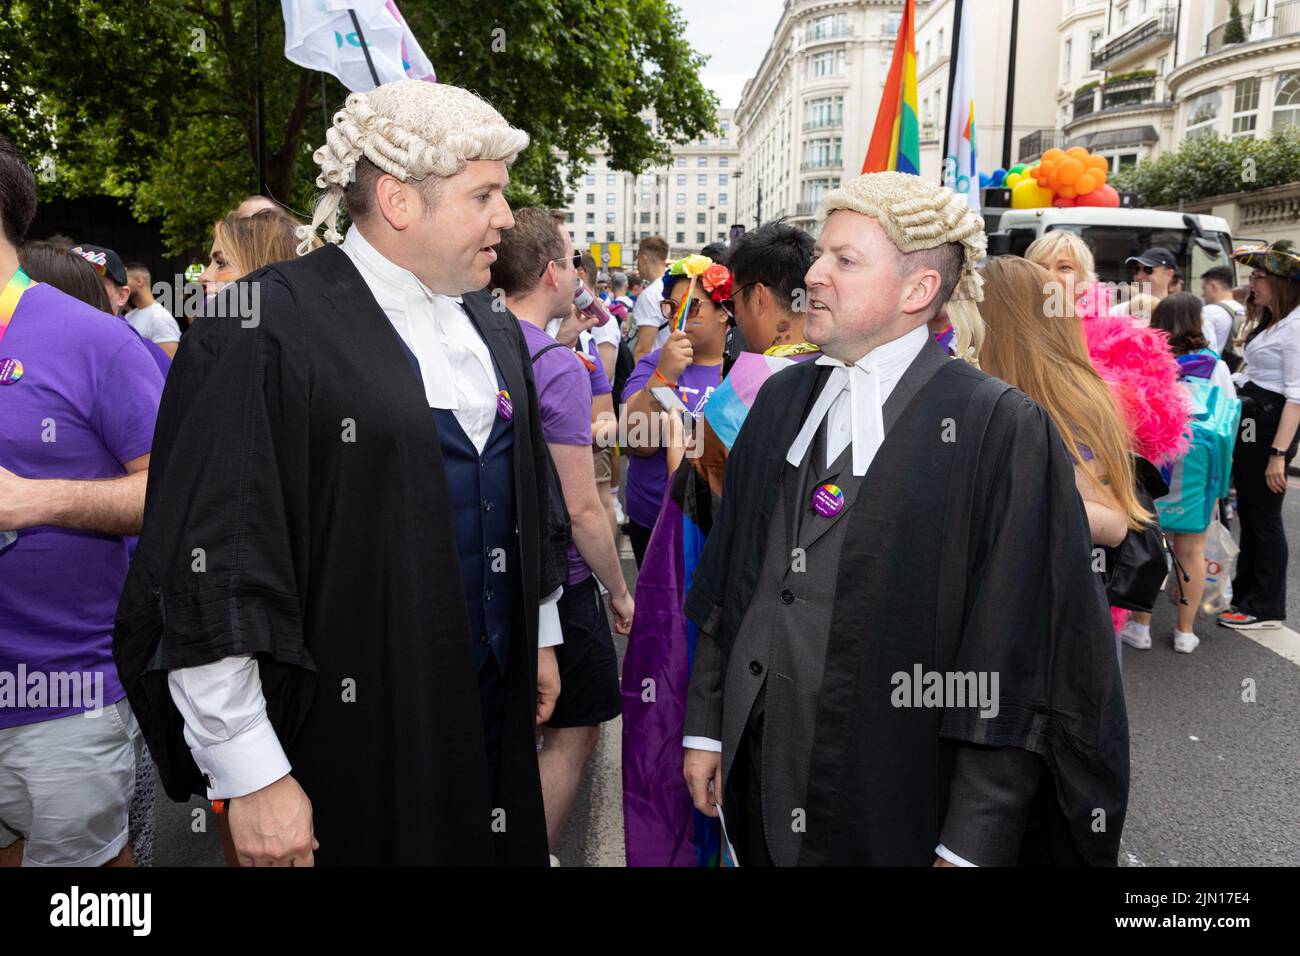 Los abogados marchan como parte del bloque Legal en London Pride 2022, vestidos con trajes y pelucas tradicionales Foto de stock